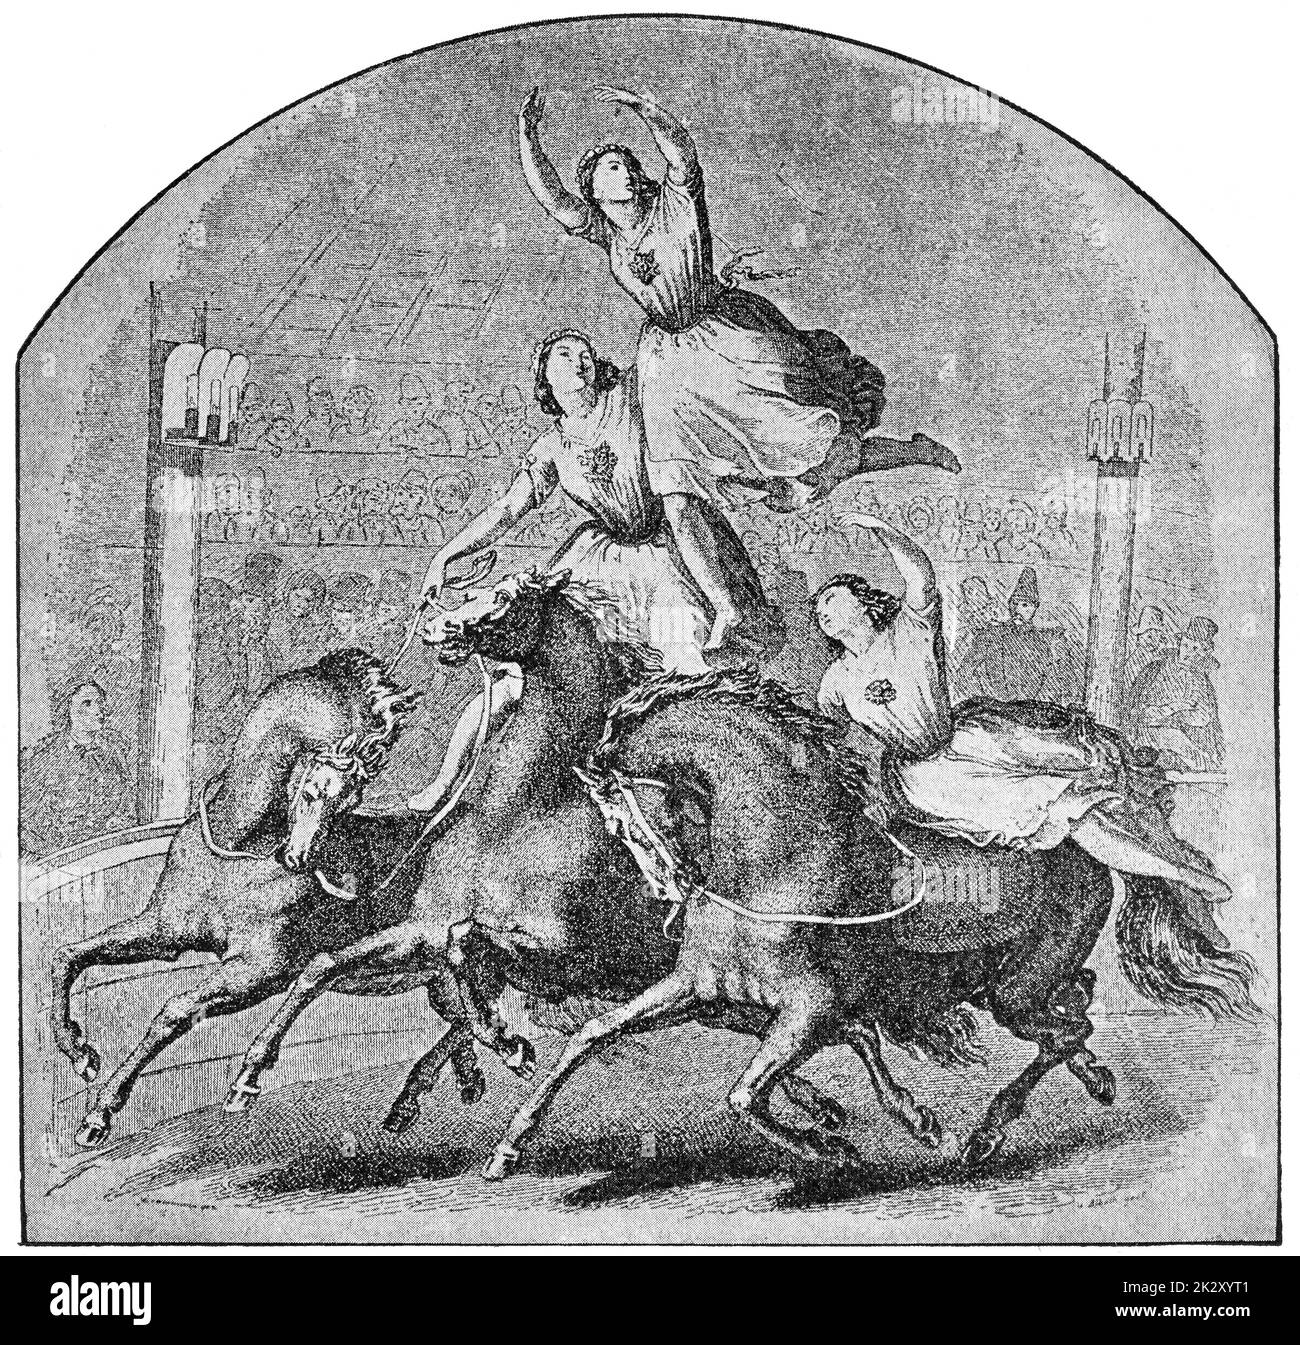 Le Cirque Olympique, connu sous le nom de Cirque Franconi (1838) - une compagnie de théâtre équestre. Illustration du 19e siècle. Arrière-plan blanc. Banque D'Images